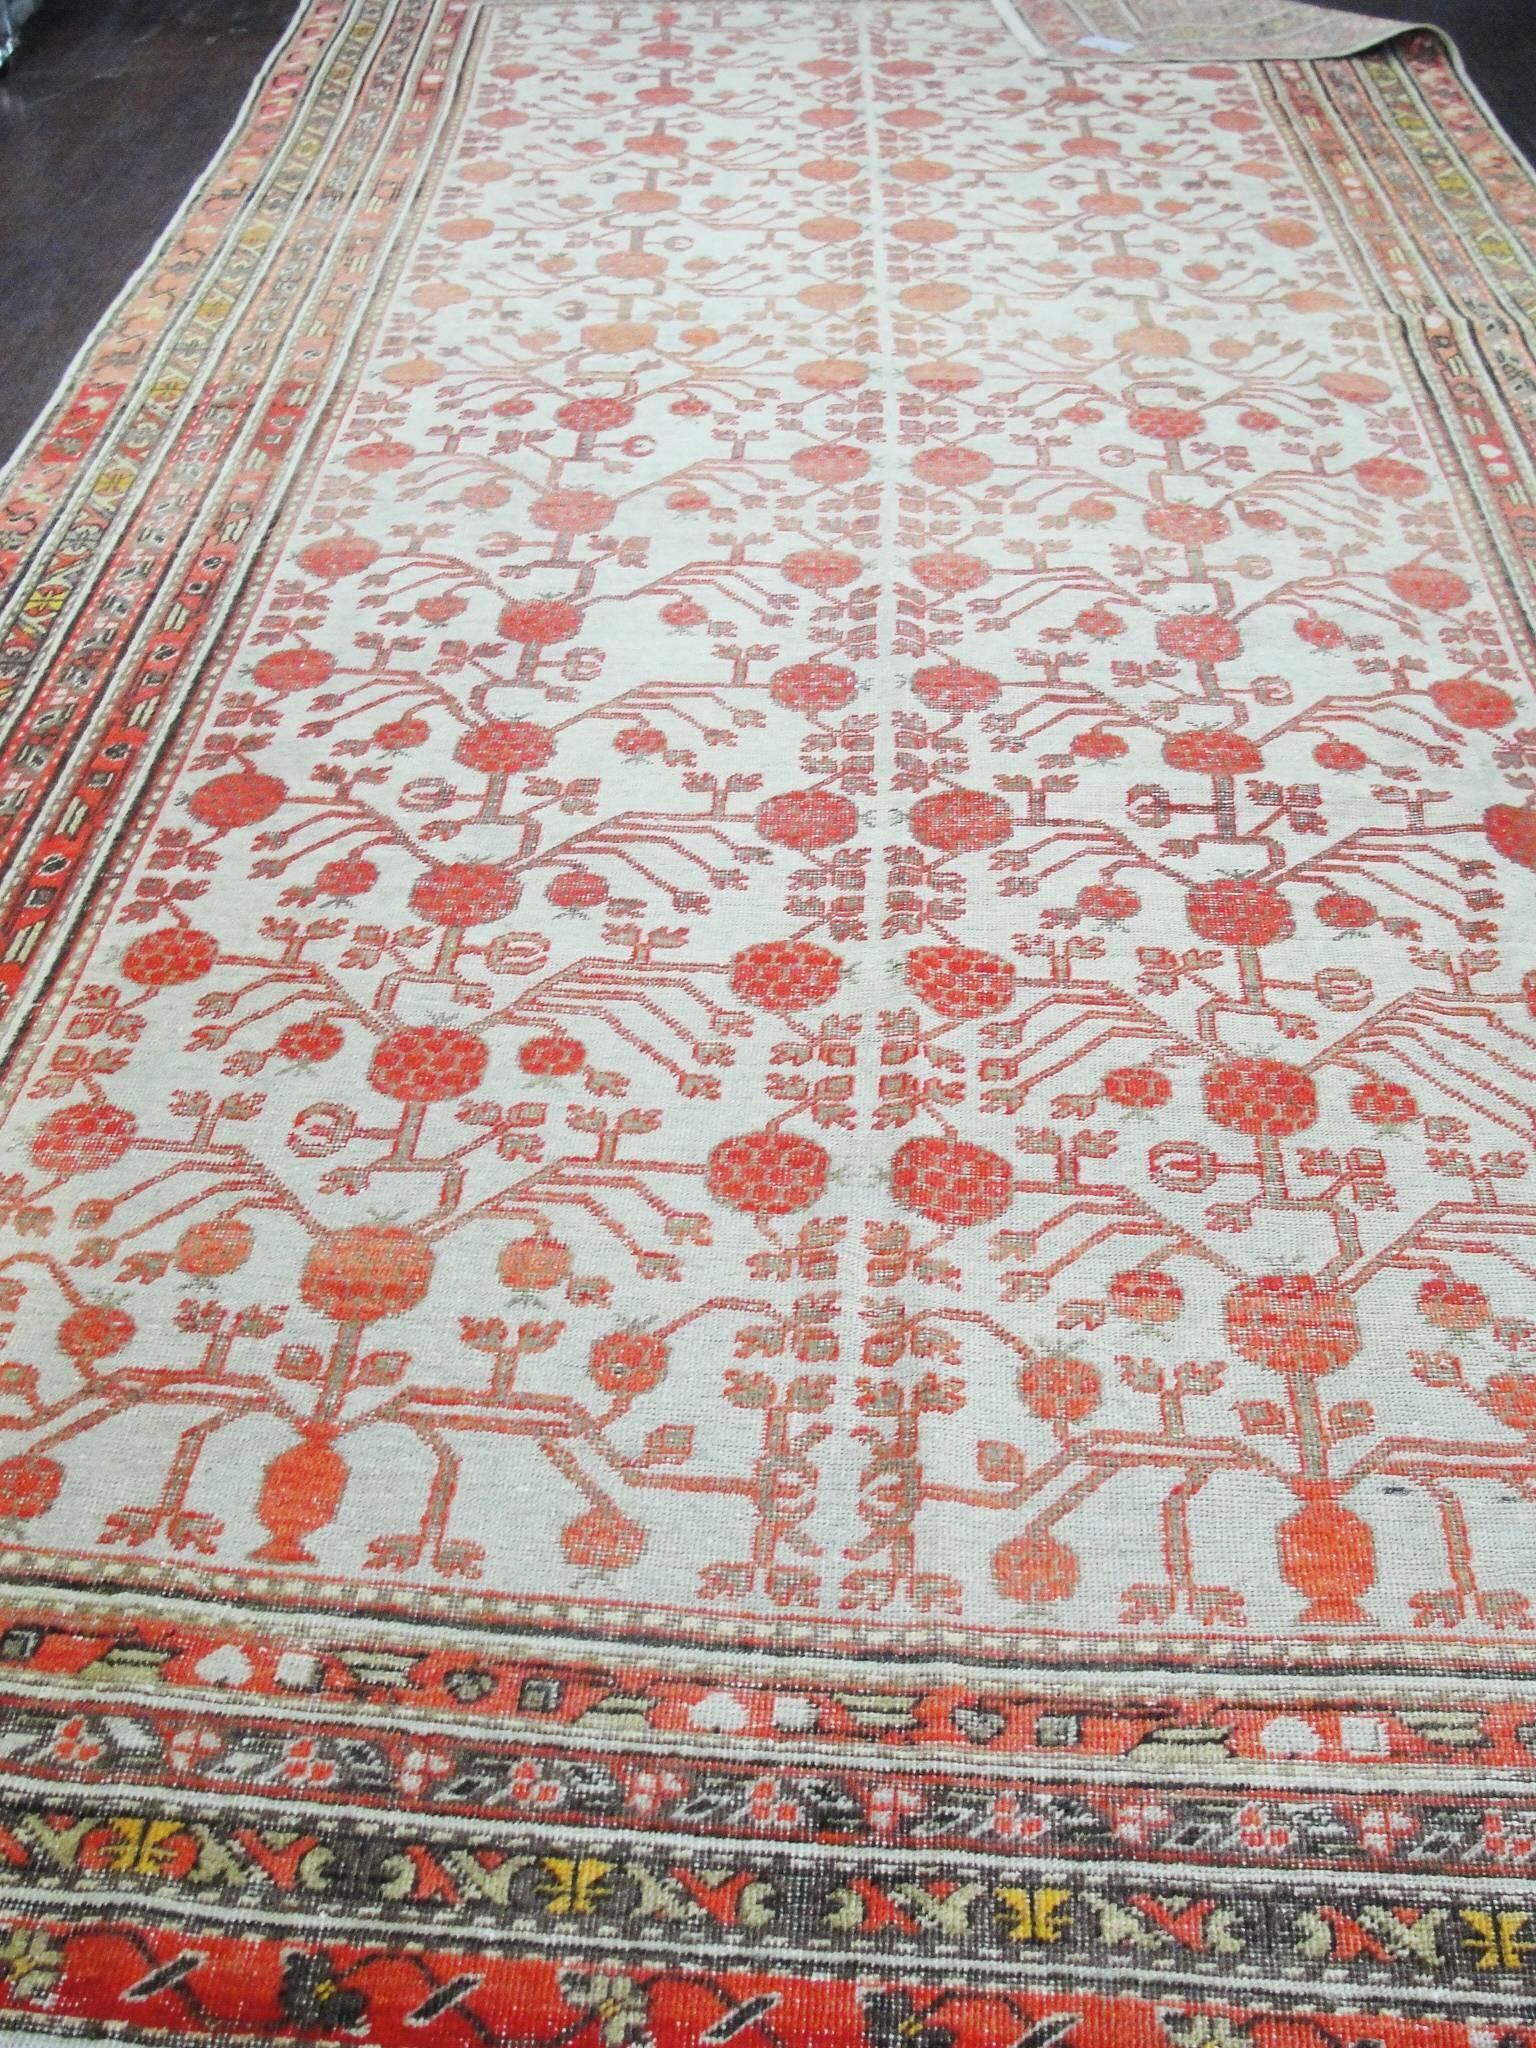 19th Century  Antique Khotan Long Carpet, 6'4